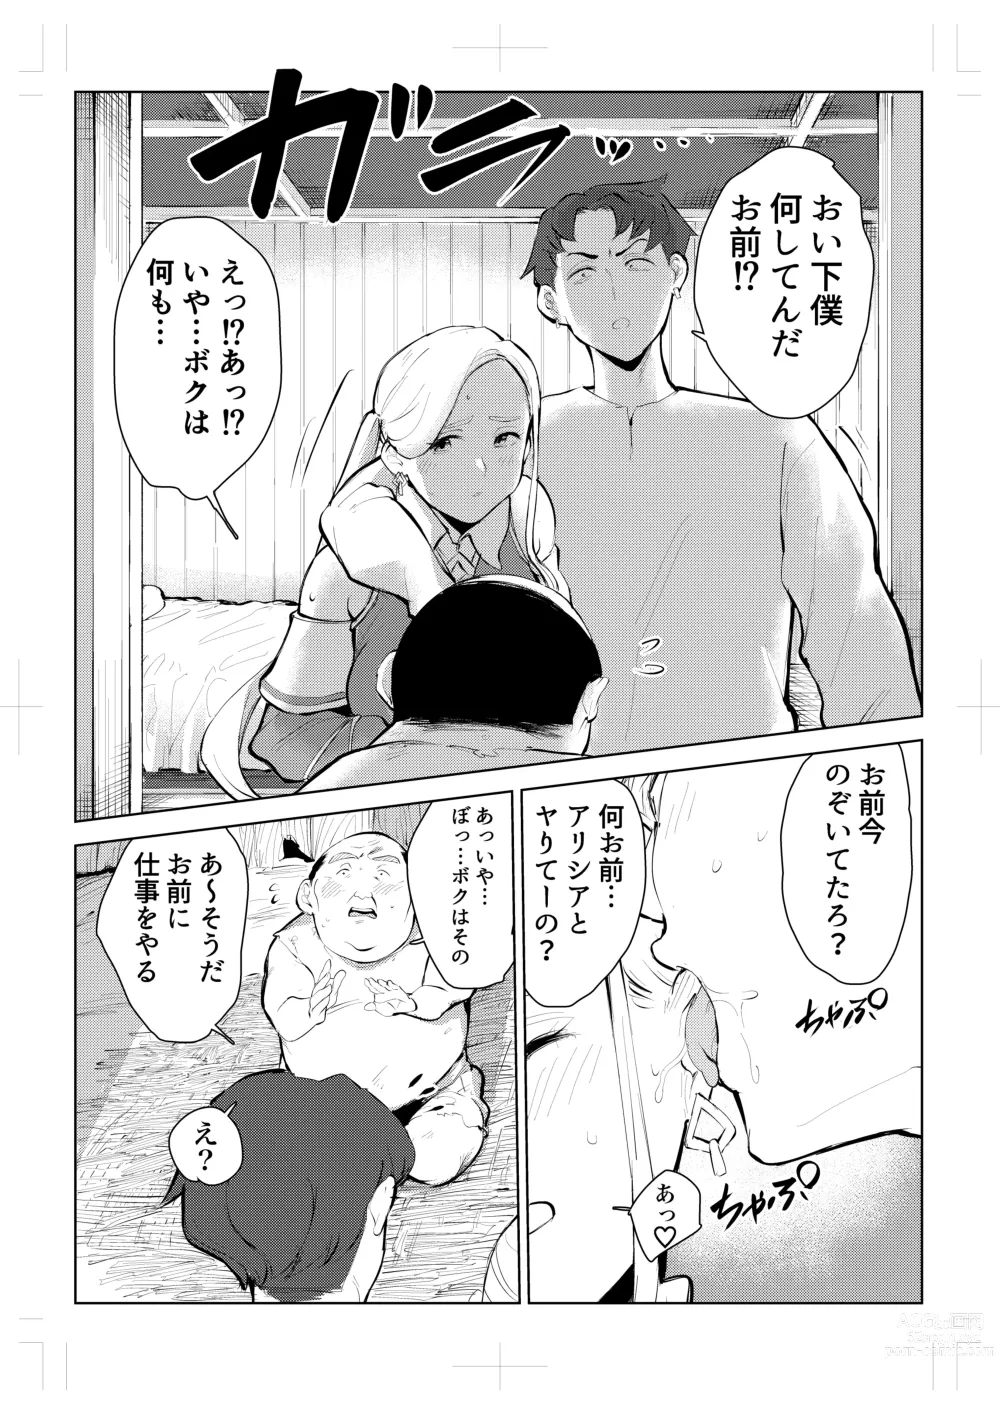 Page 10 of doujinshi 40-sai no Mahoutukai  0